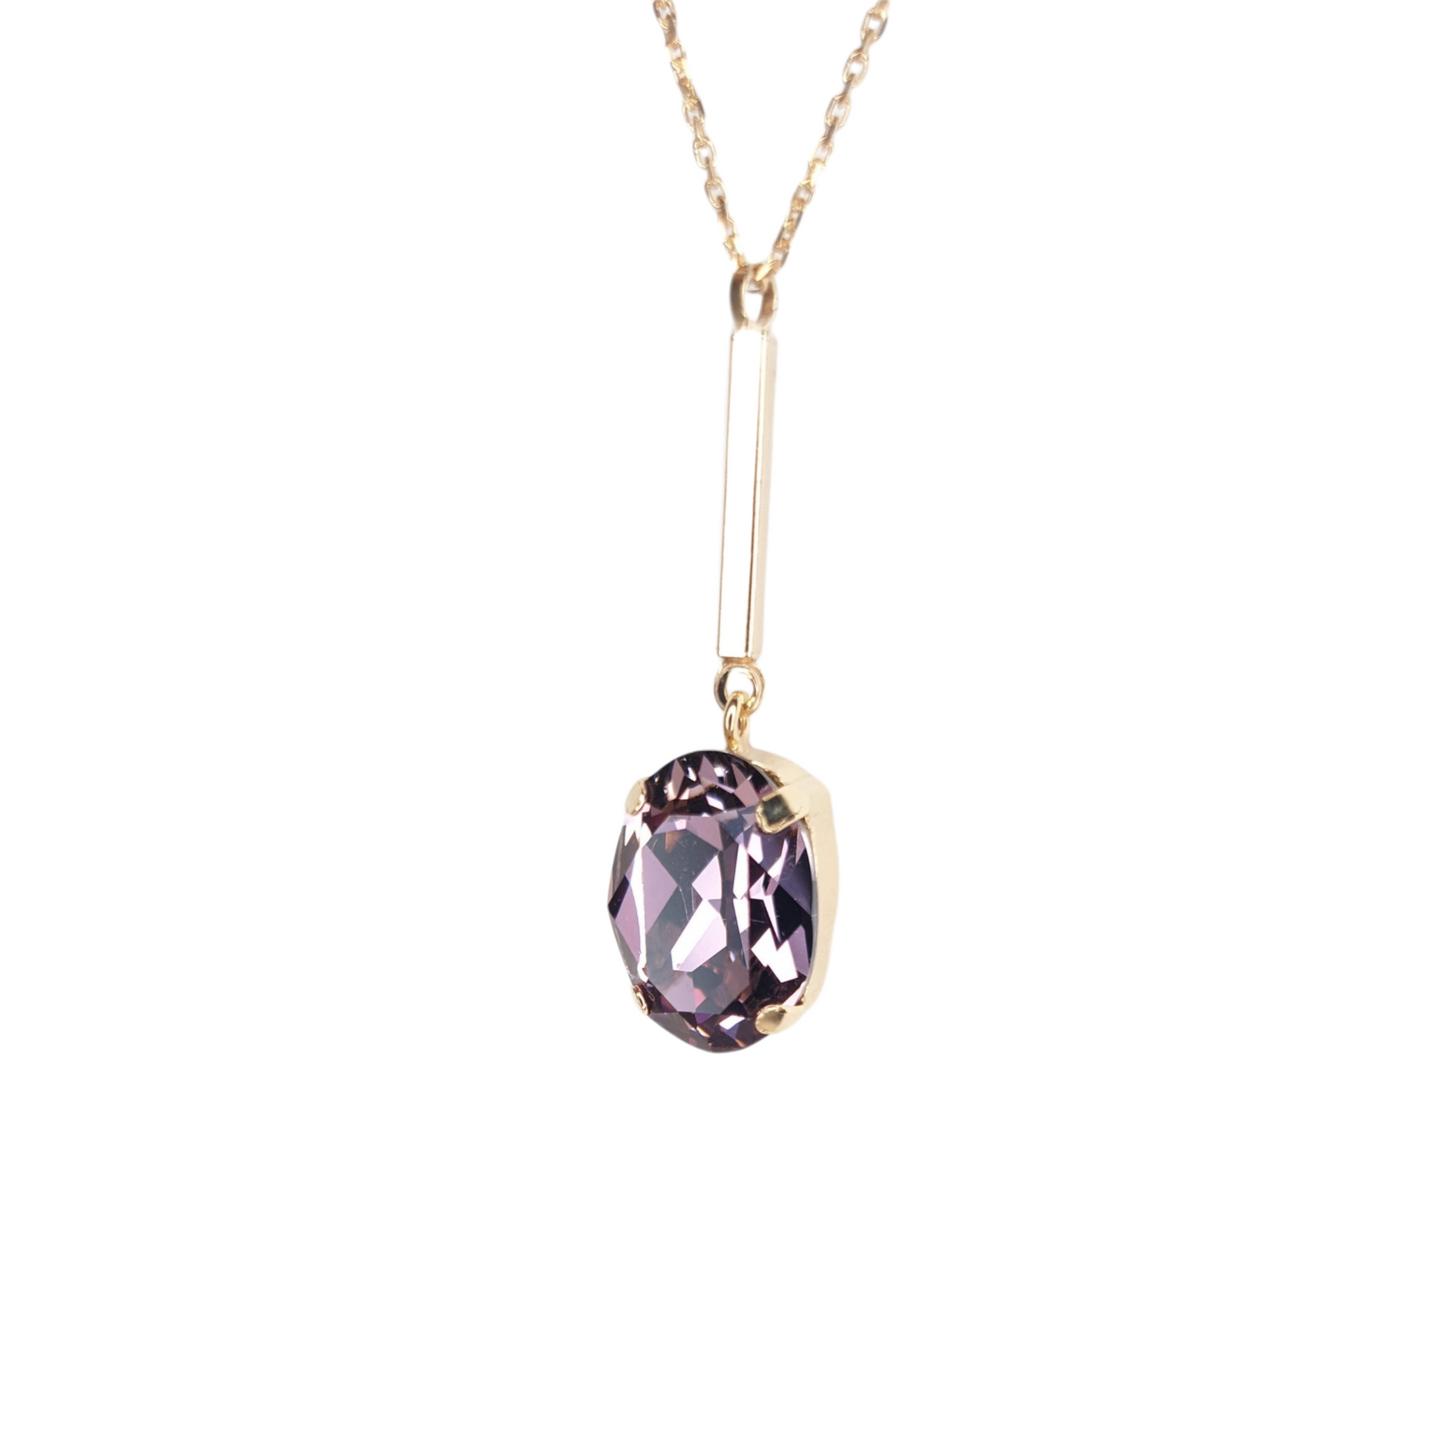 Luxuriöse 925 Silber, 18k vergoldete Halskette mit einem prächtigen Swarovski Stein im Ovalschliff in zartem Rosa - ein besonderes und edles Schmuckstück